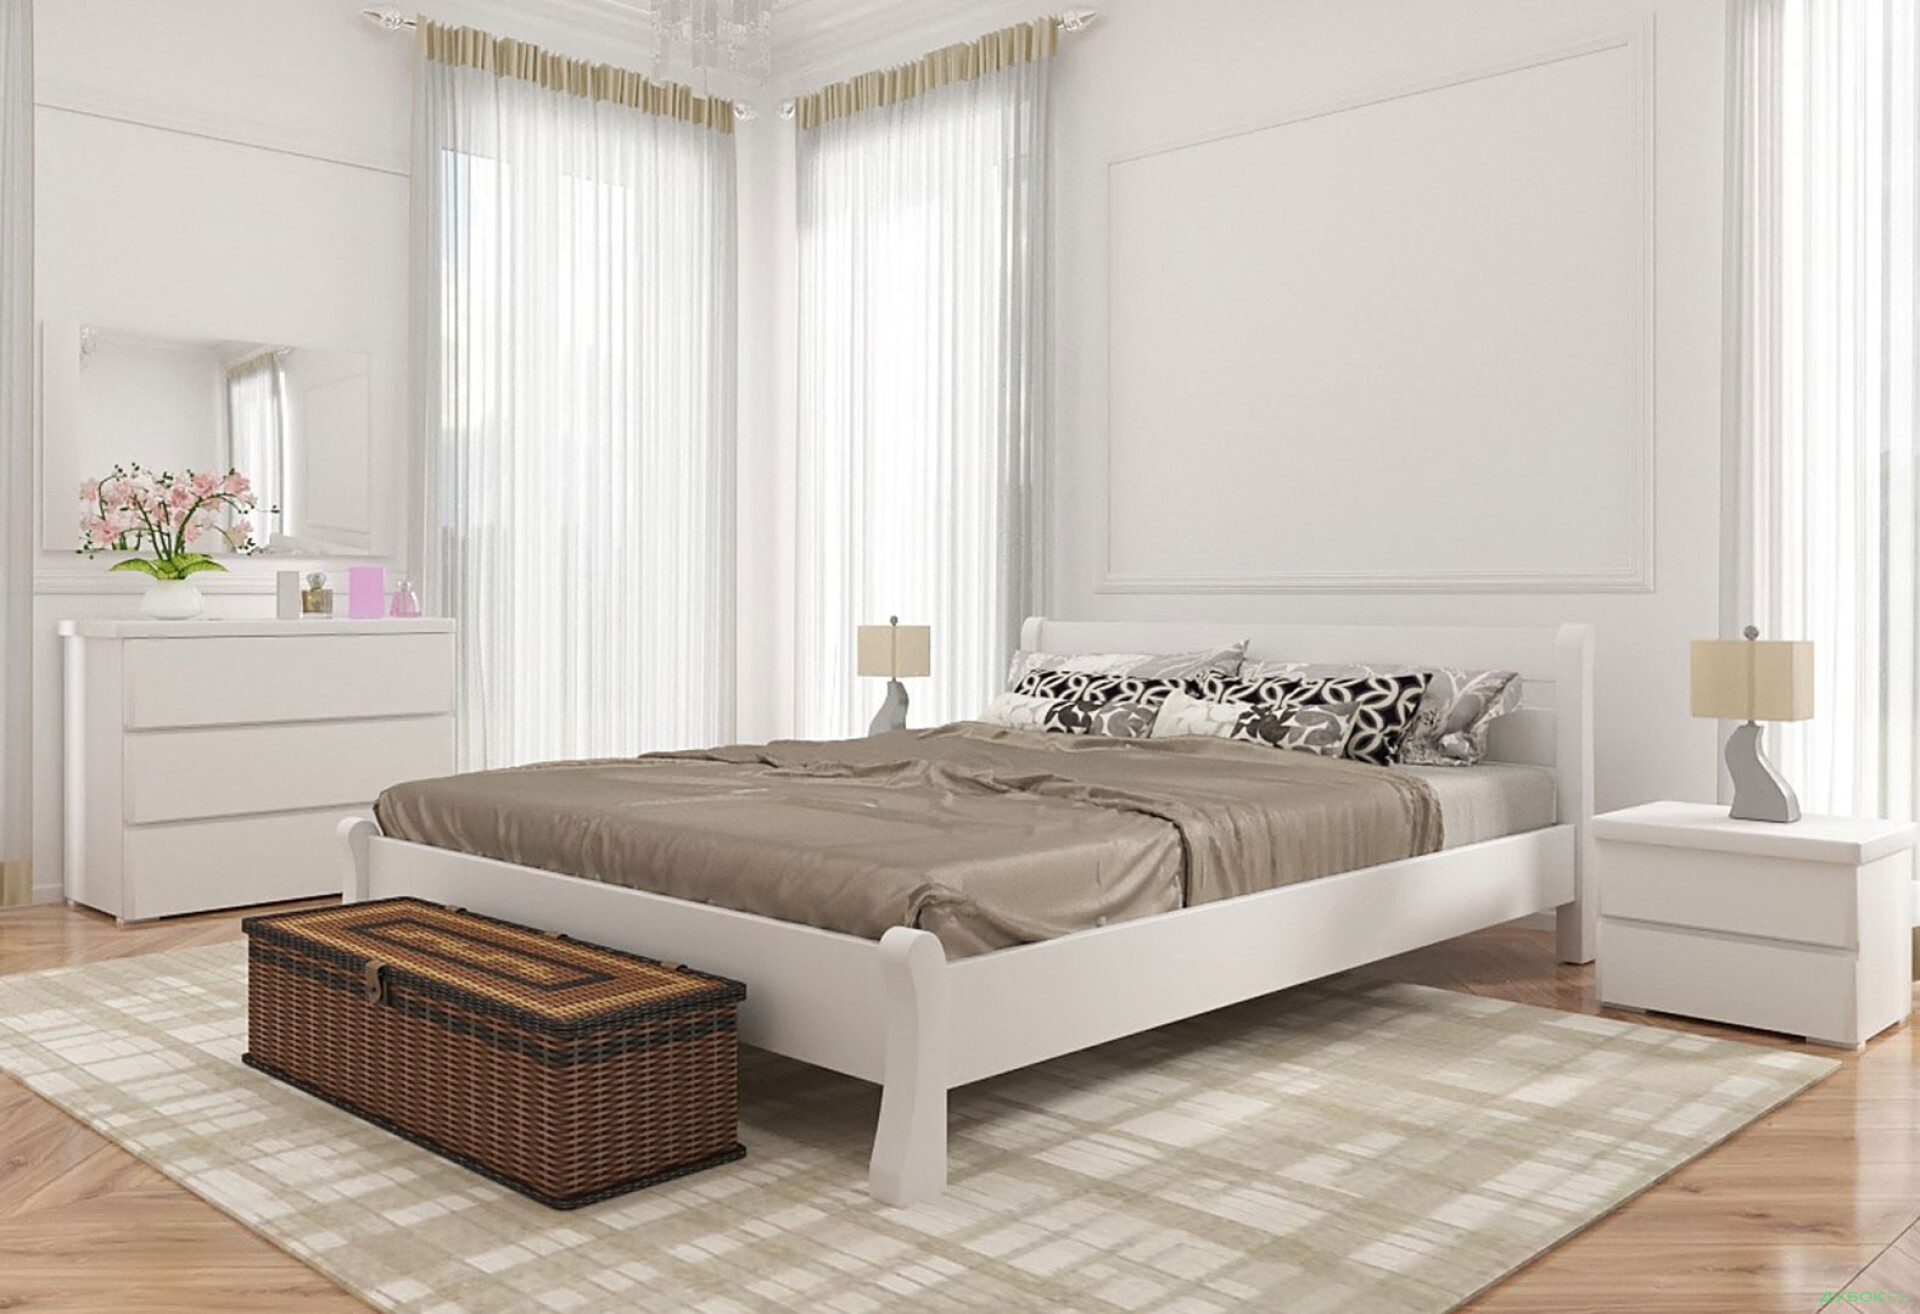 Фото 2 - Кровать Арбор Древ Венеция 160х200, сосна, белый